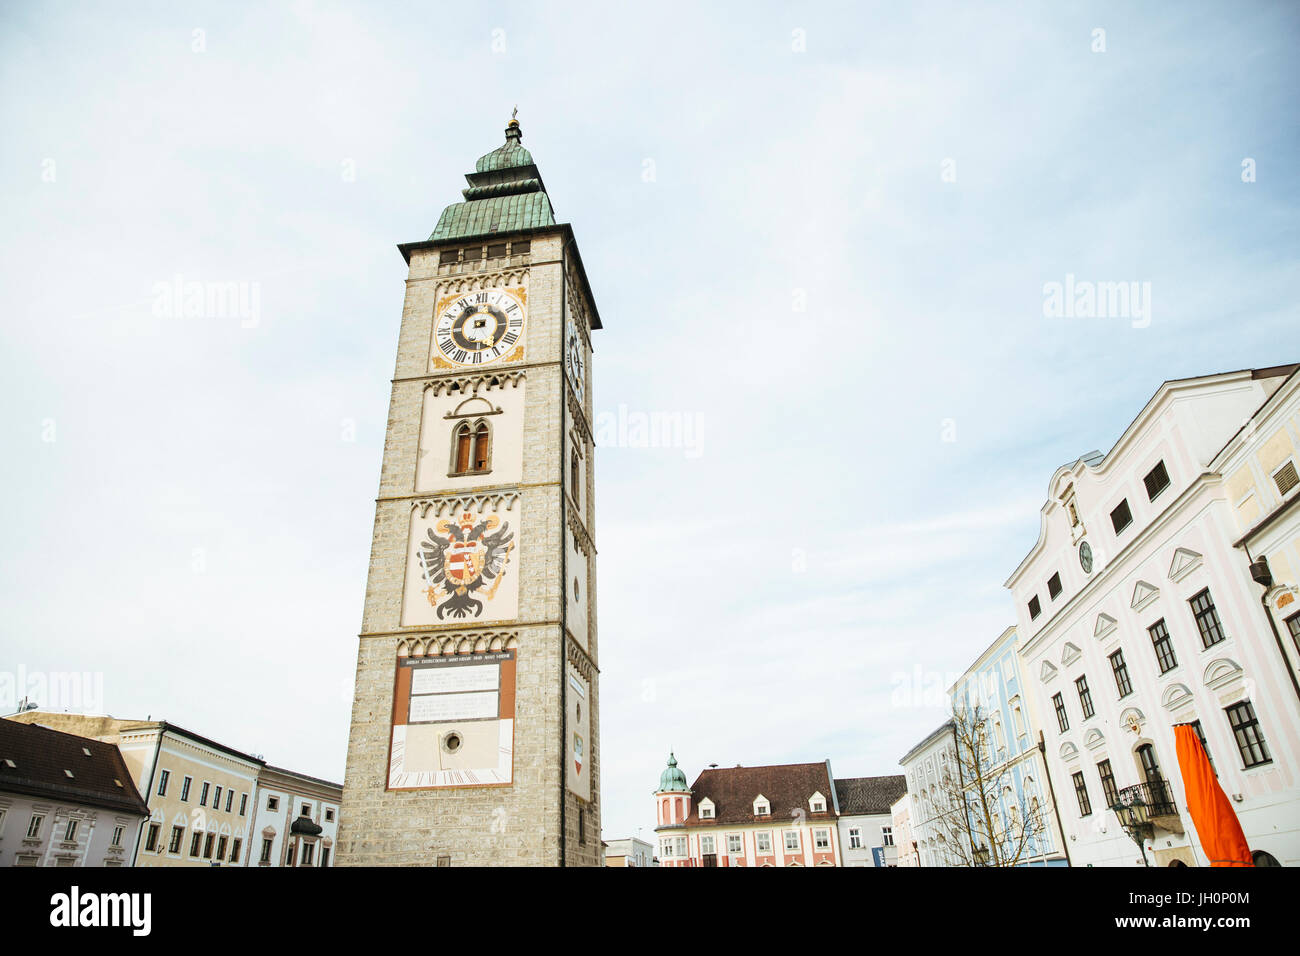 Enns Stadtplatz mit dem Wahrzeichen Ennser "Stadtturm", Hauptplatz, Enns Oberösterreich, Österreich Foto de stock